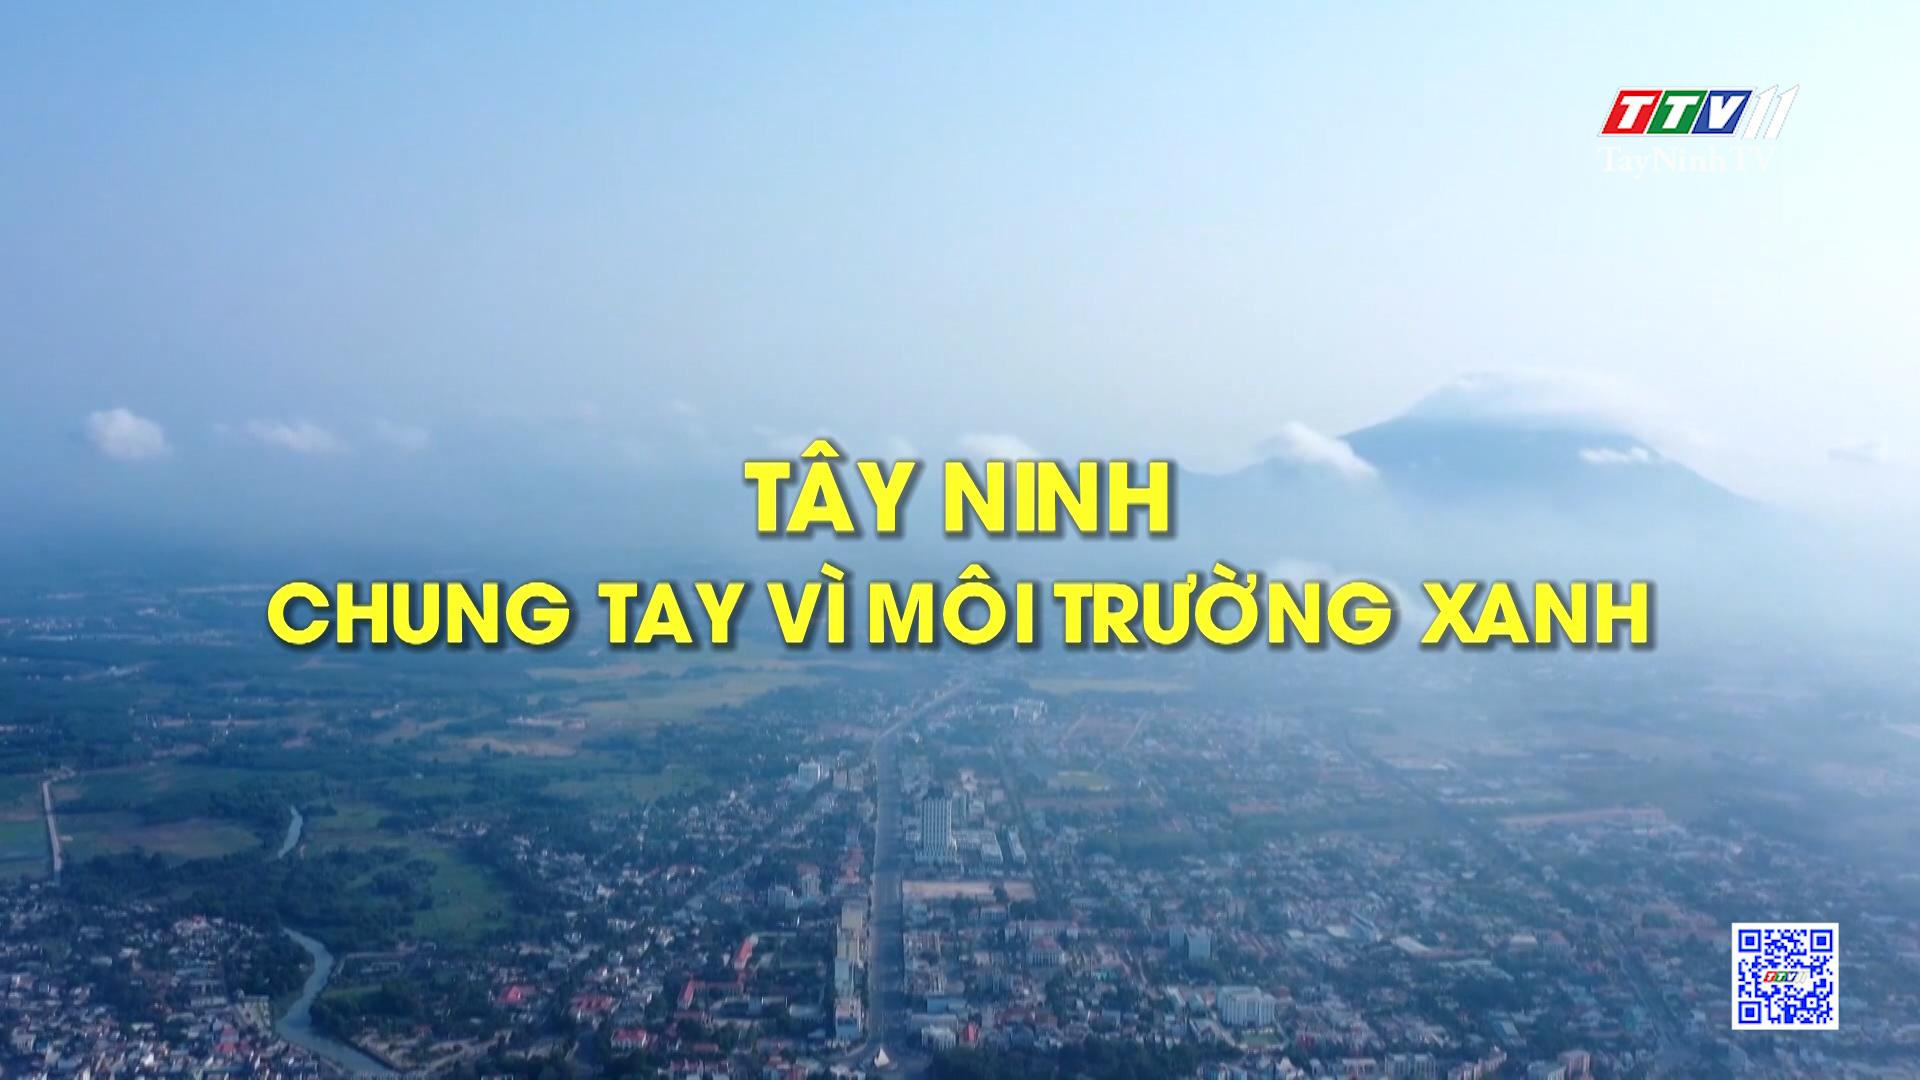 Tây Ninh chung tay vì môi trường xanh | ĐẠI ĐOÀN KẾT TOÀN DÂN | TayNinhTV